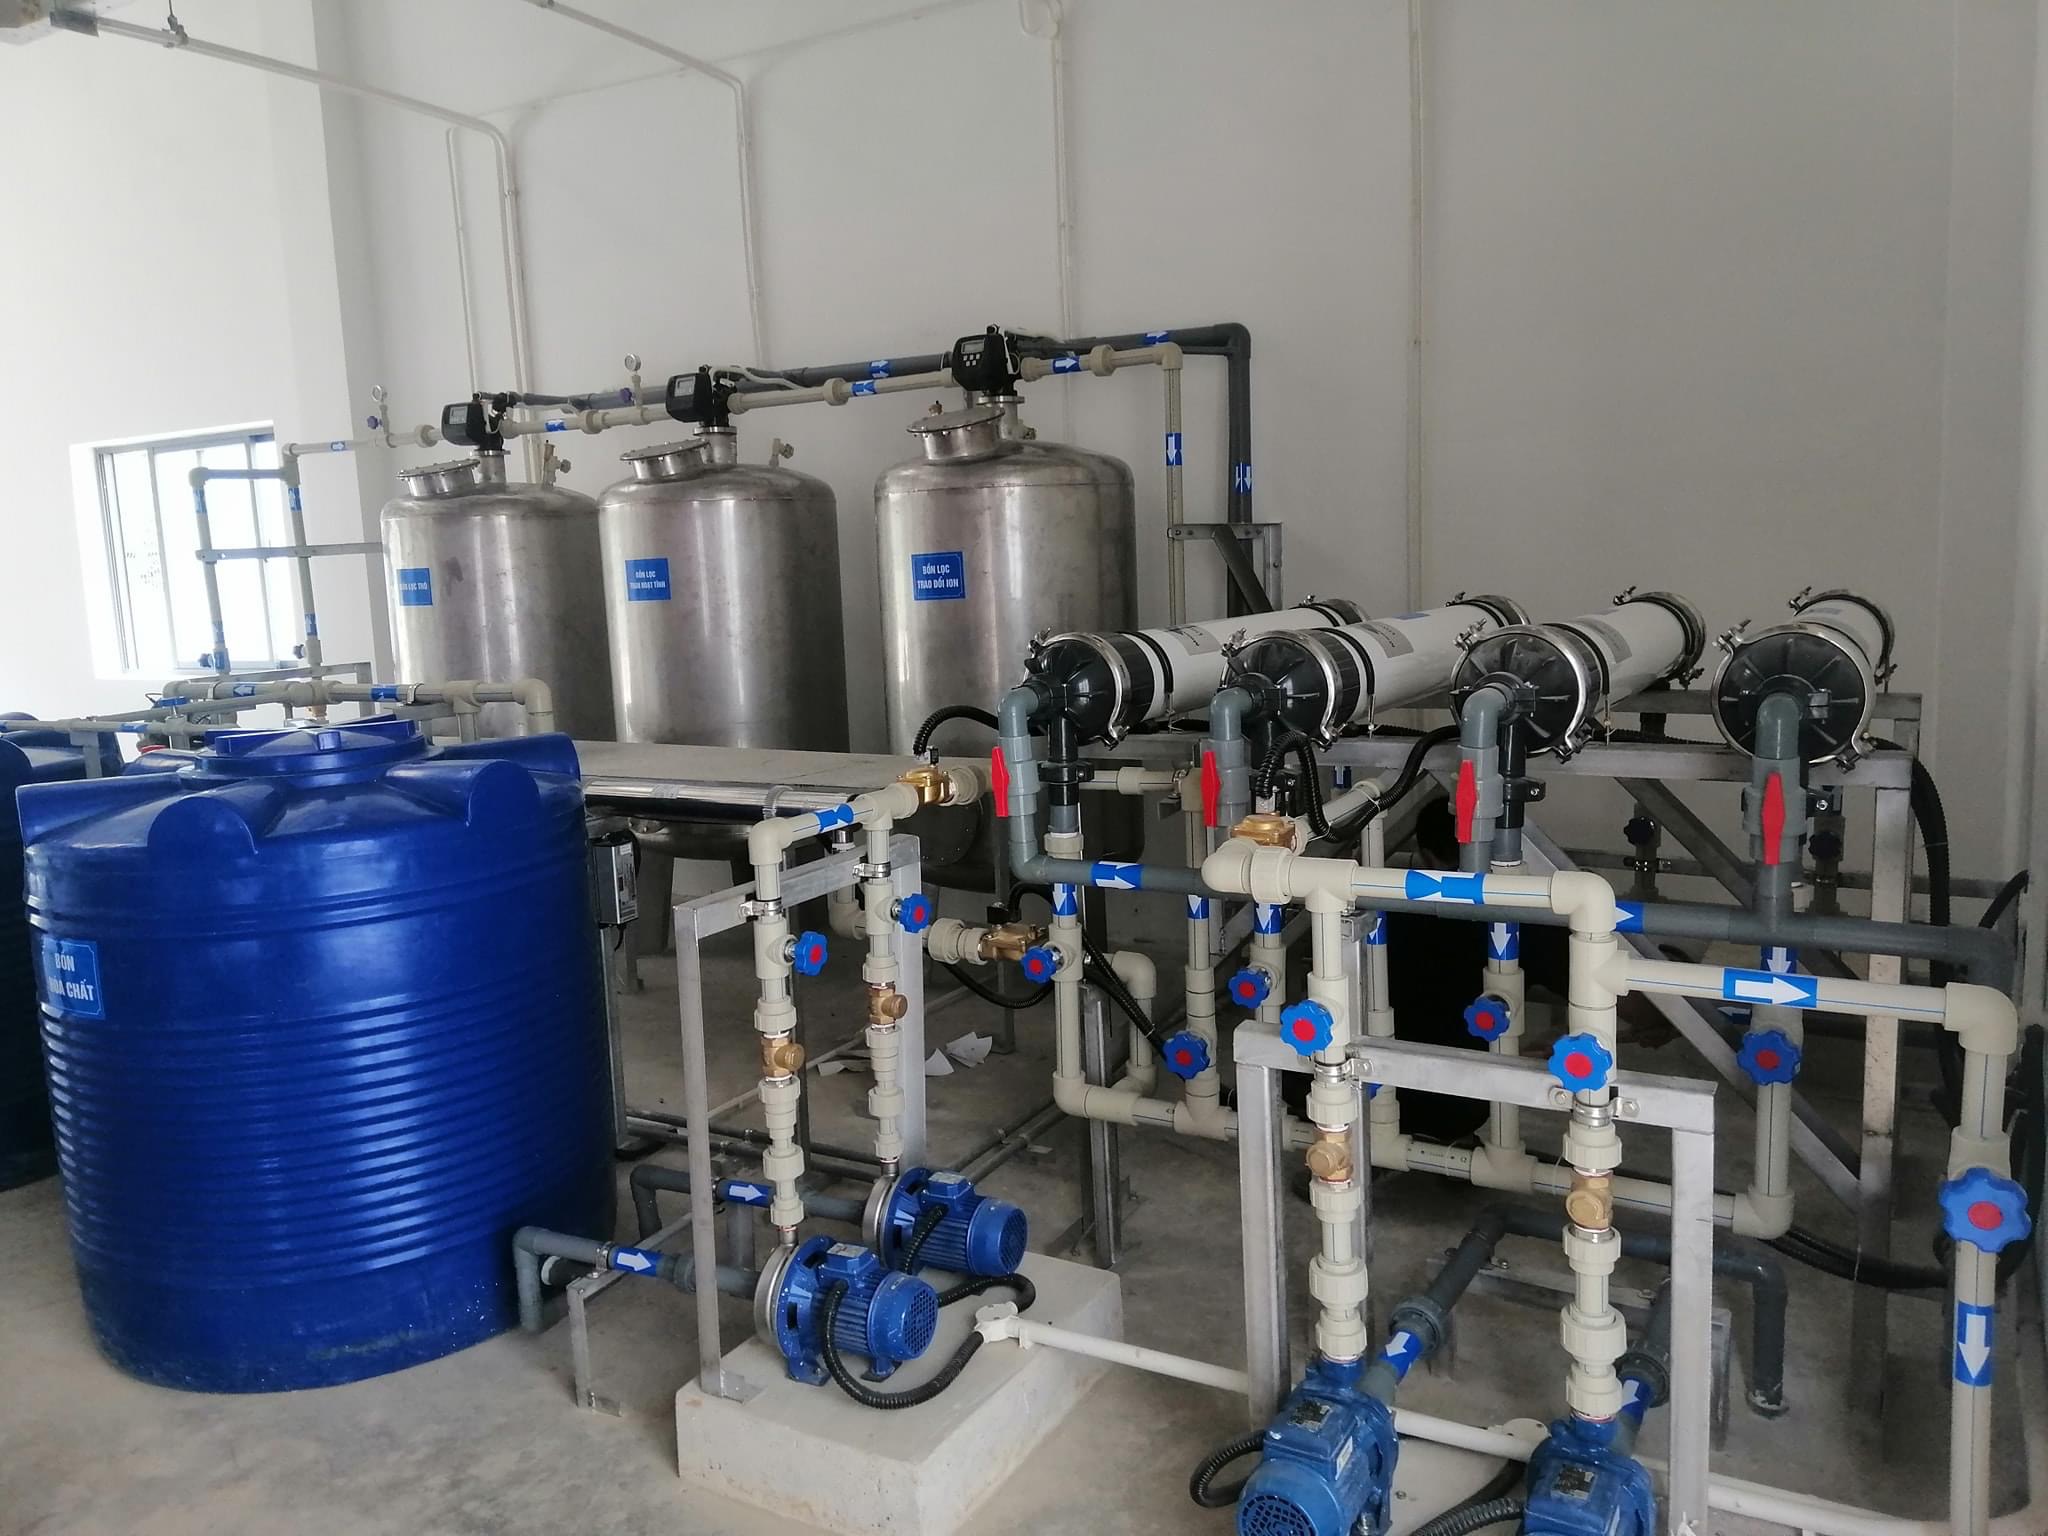  Hệ thống xử lý nước RO-DI: Giải pháp tối ưu cho nước sạch trong biệt thự cao cấp